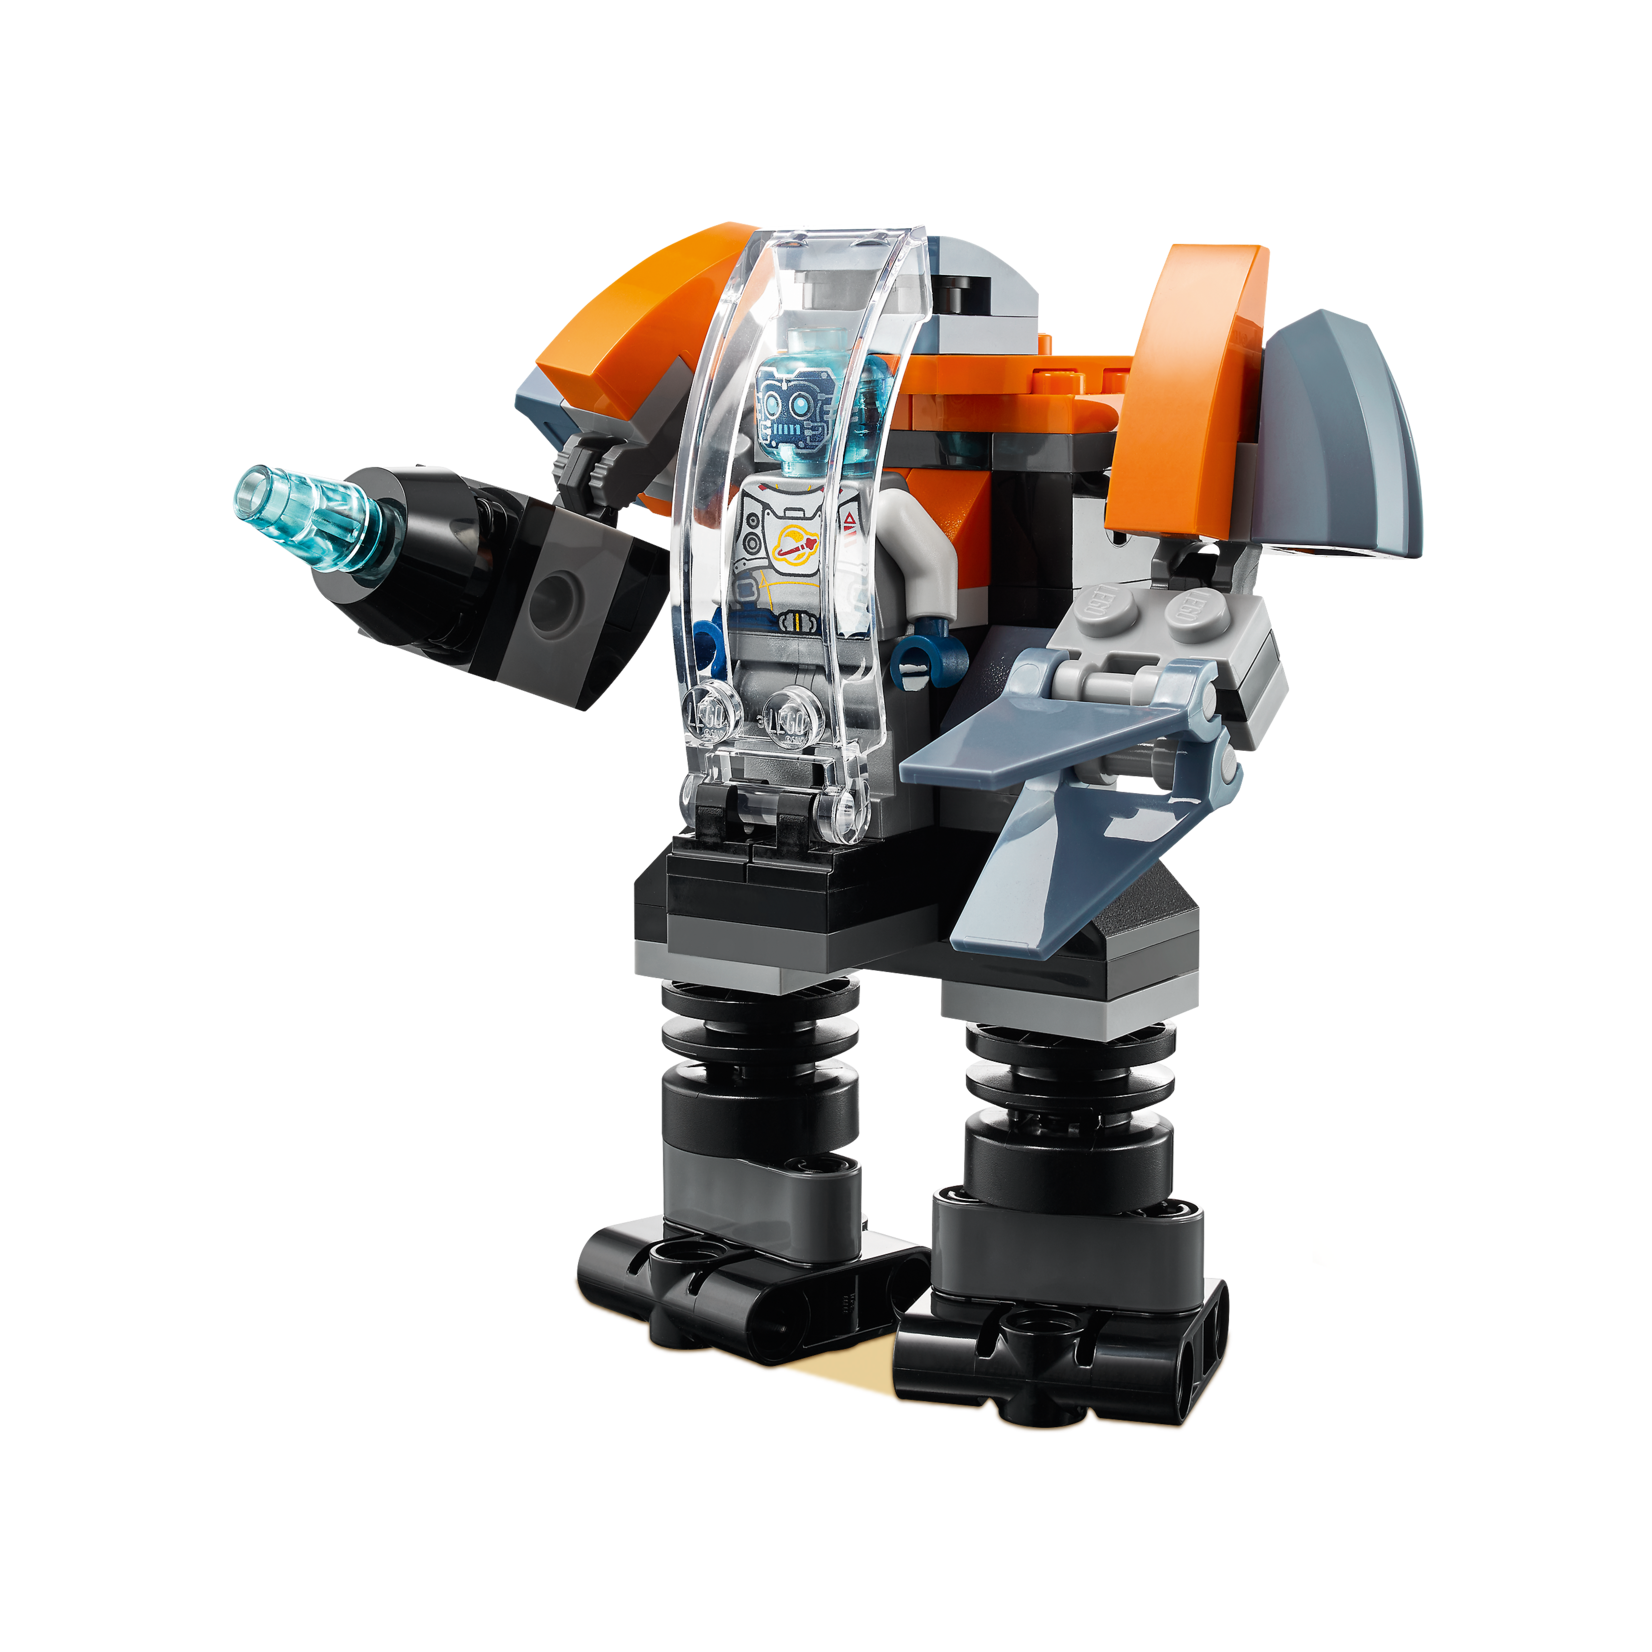 LEGO Cyberdrone - 31111